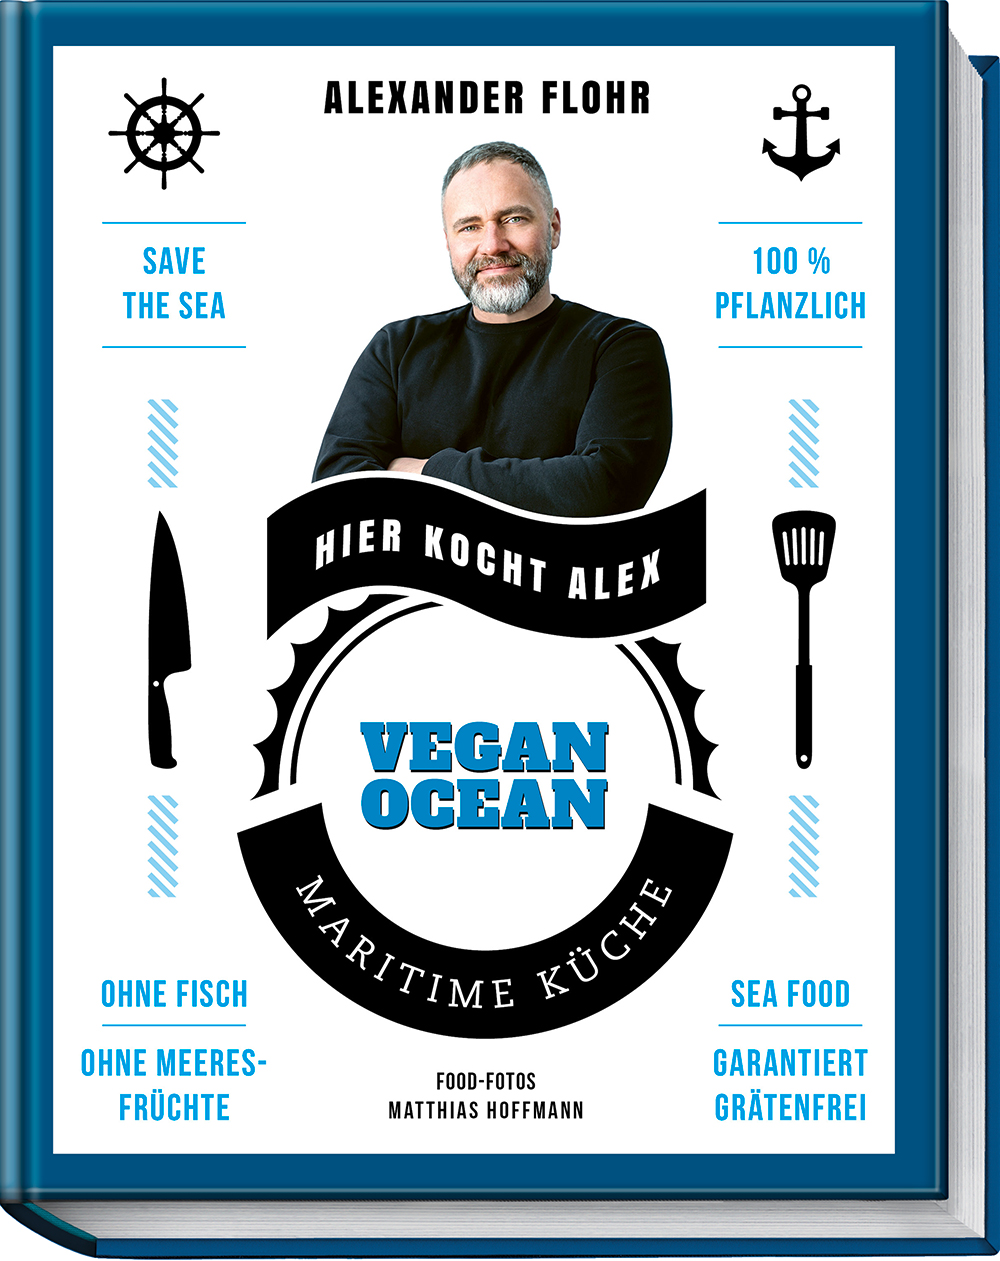 Vegan Ocean Maritime Küche – garantiert grätenfrei